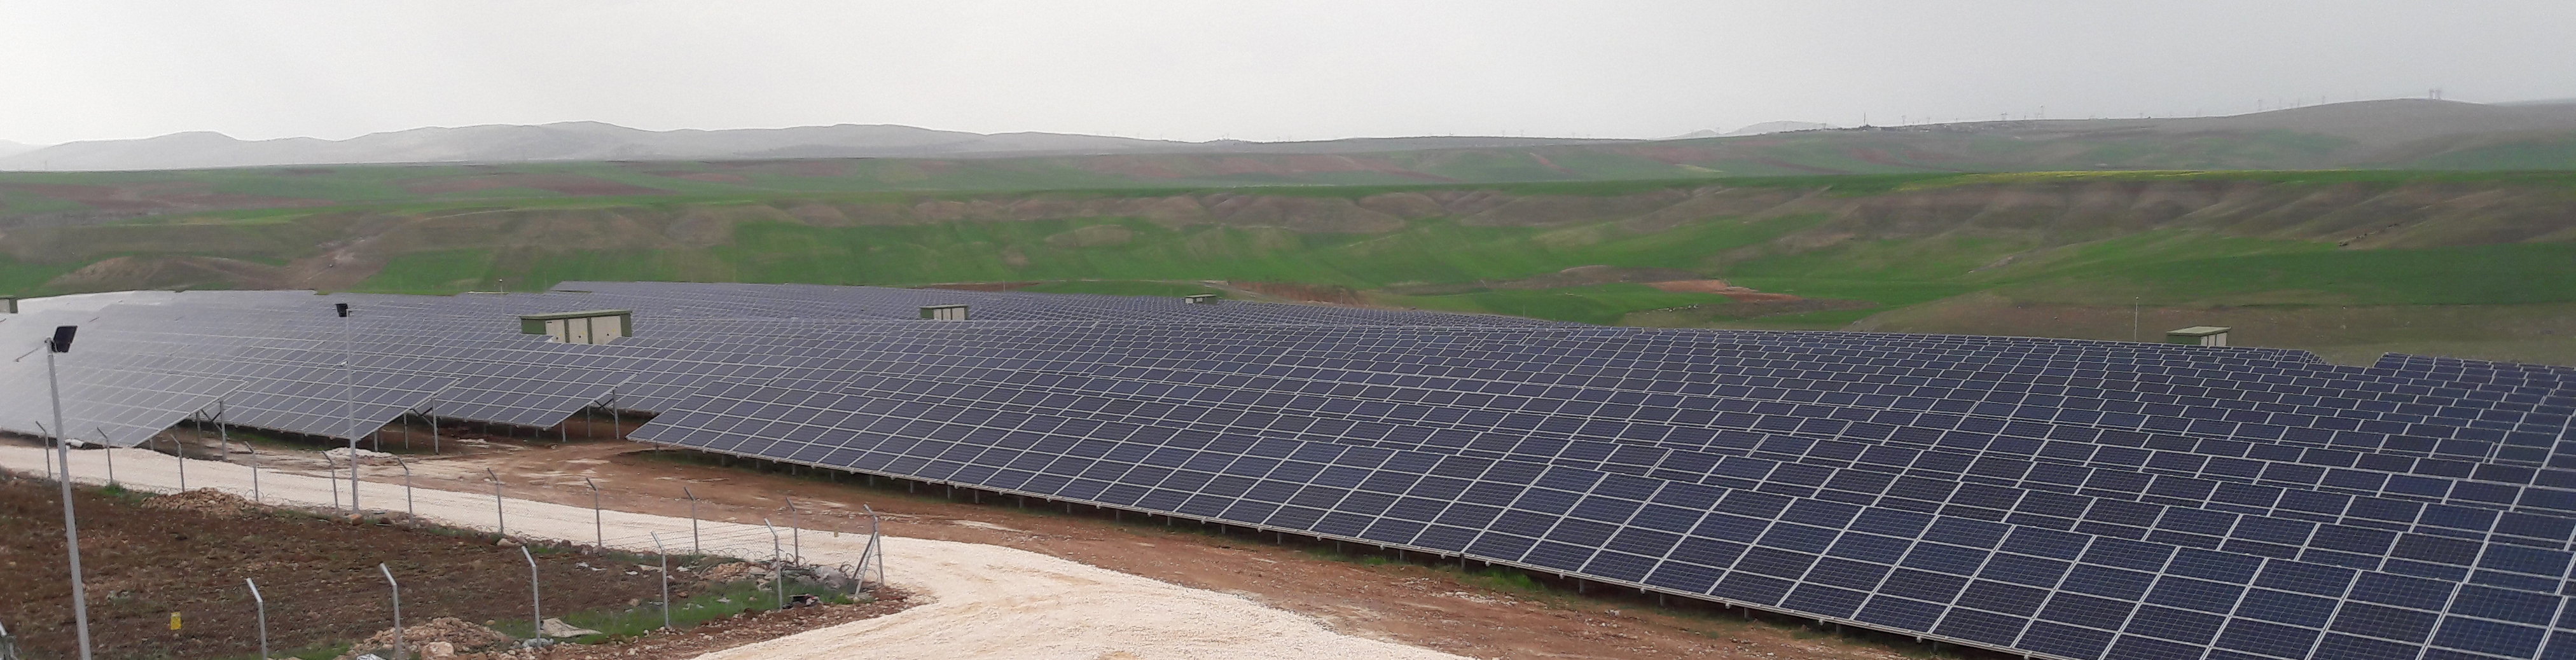 Güneydoğu'ya 12 Milyon Dolar'lık güneş enerjisi yatırımı